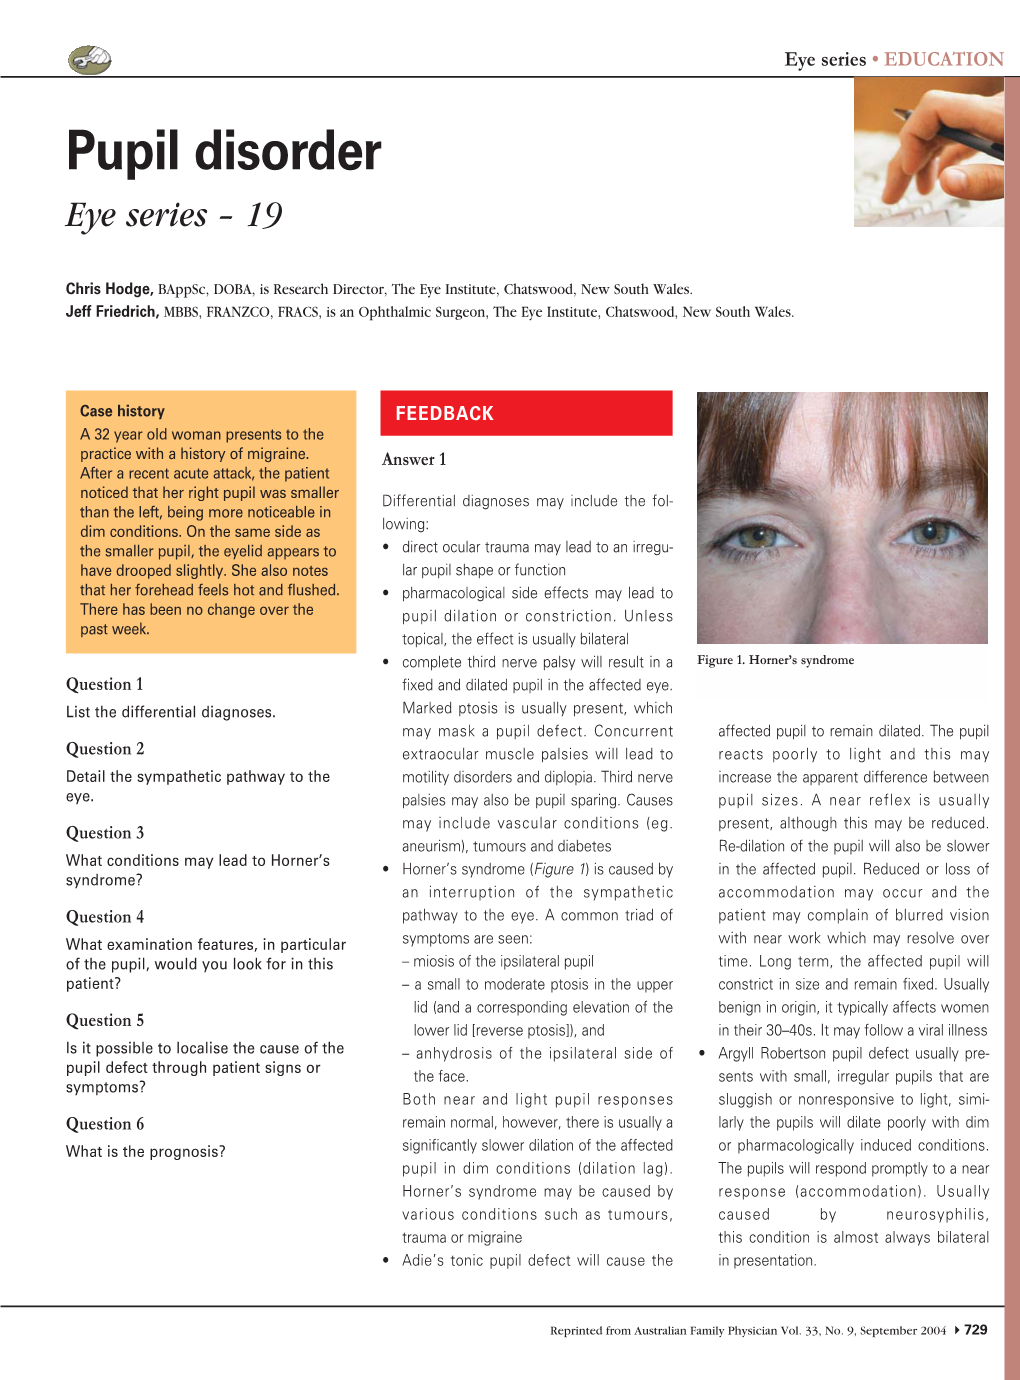 Eye Series Pupil Disorder